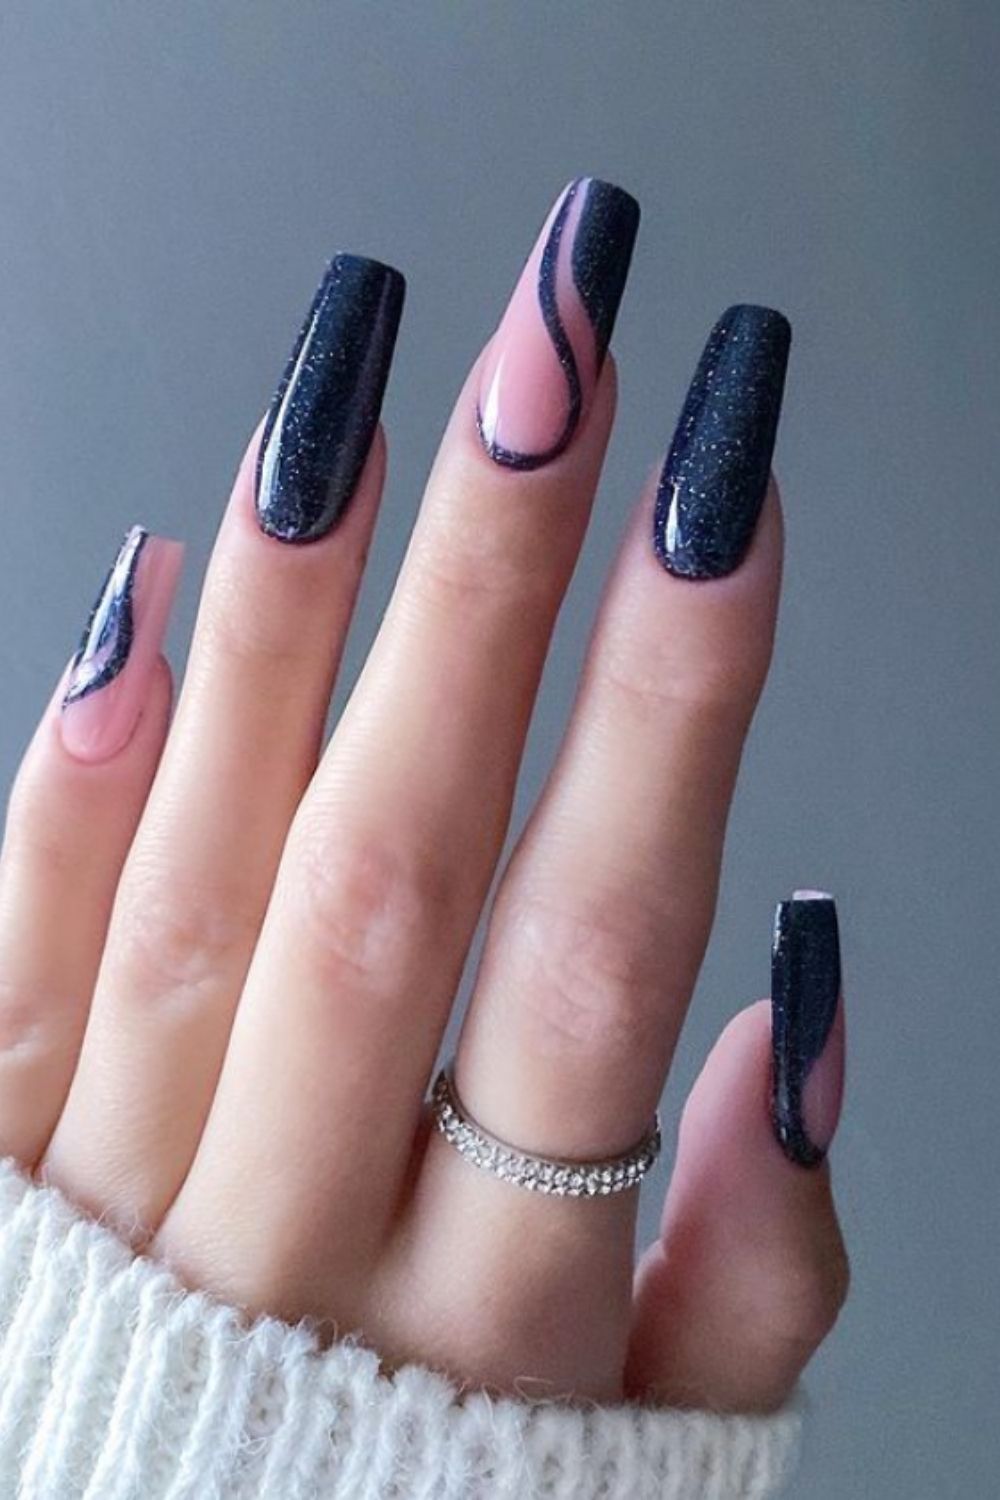 Long nails art